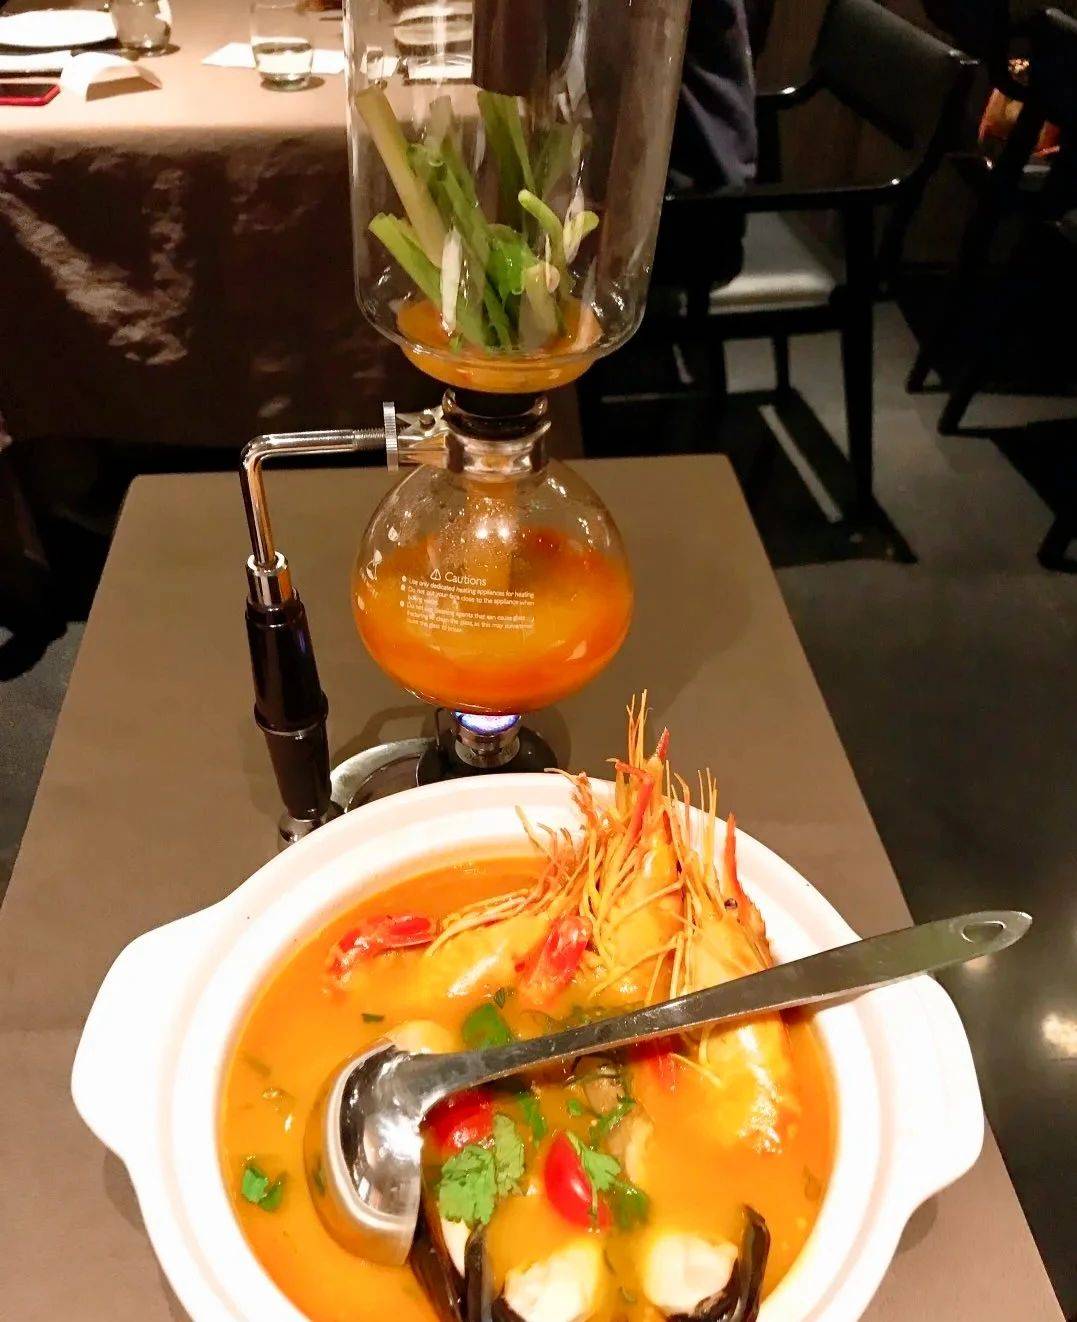 深圳湾万象城隐藏了一家米其林餐厅,大名鼎鼎的深圳泰国菜榜首